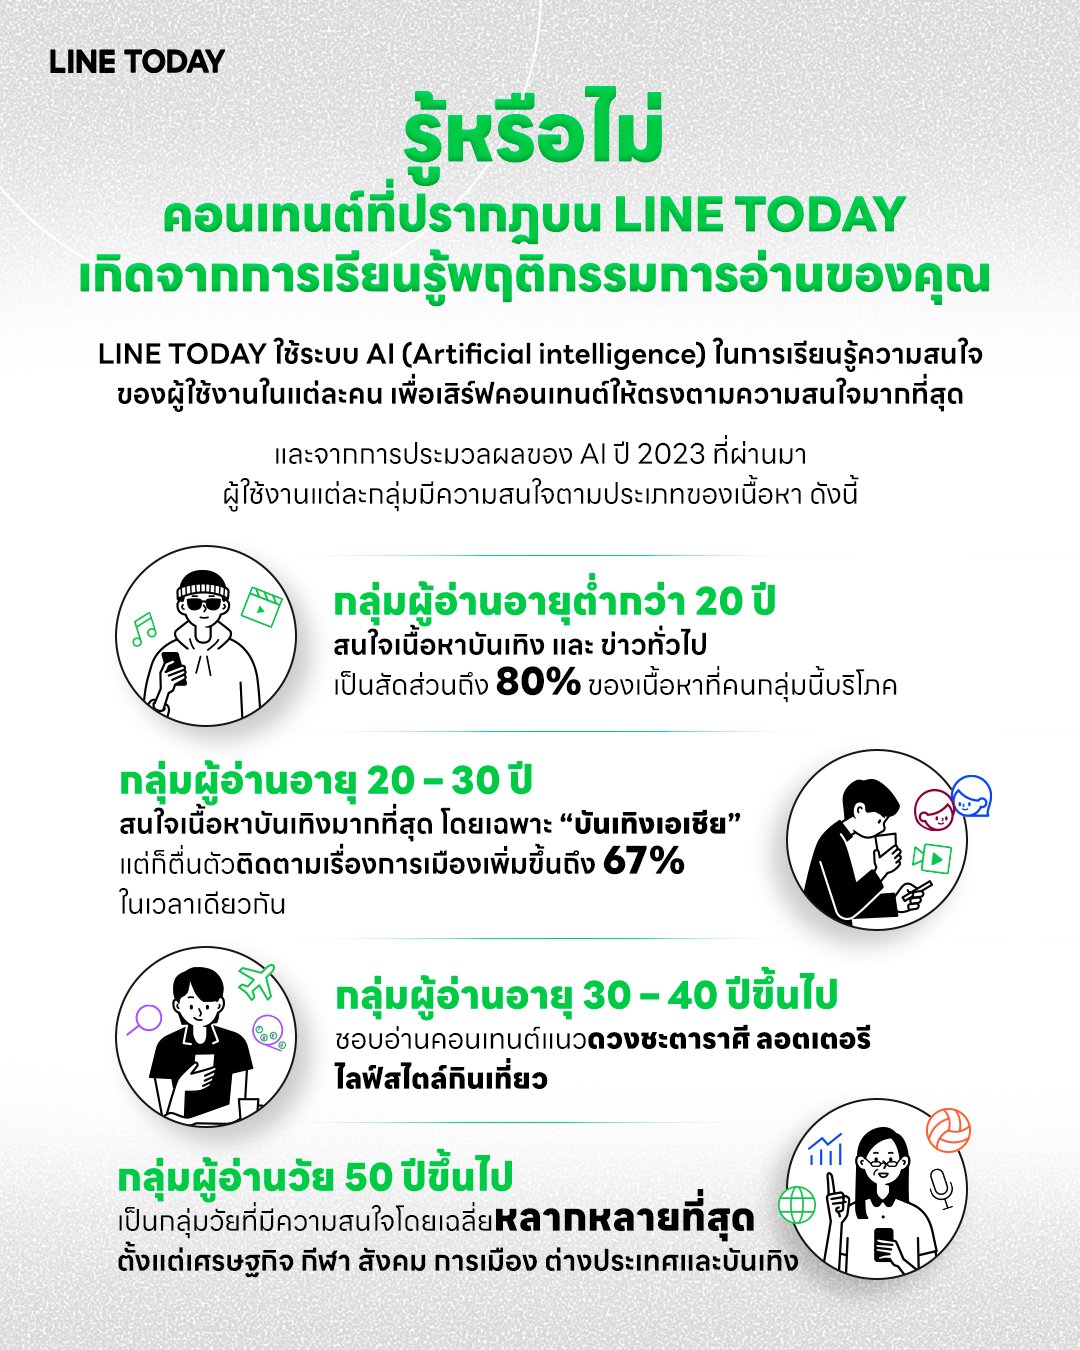 เจาะอินไซต์คนไทย ชอบเสพคอนเทนต์–ข่าวสารอะไร โดย LINE TODAY